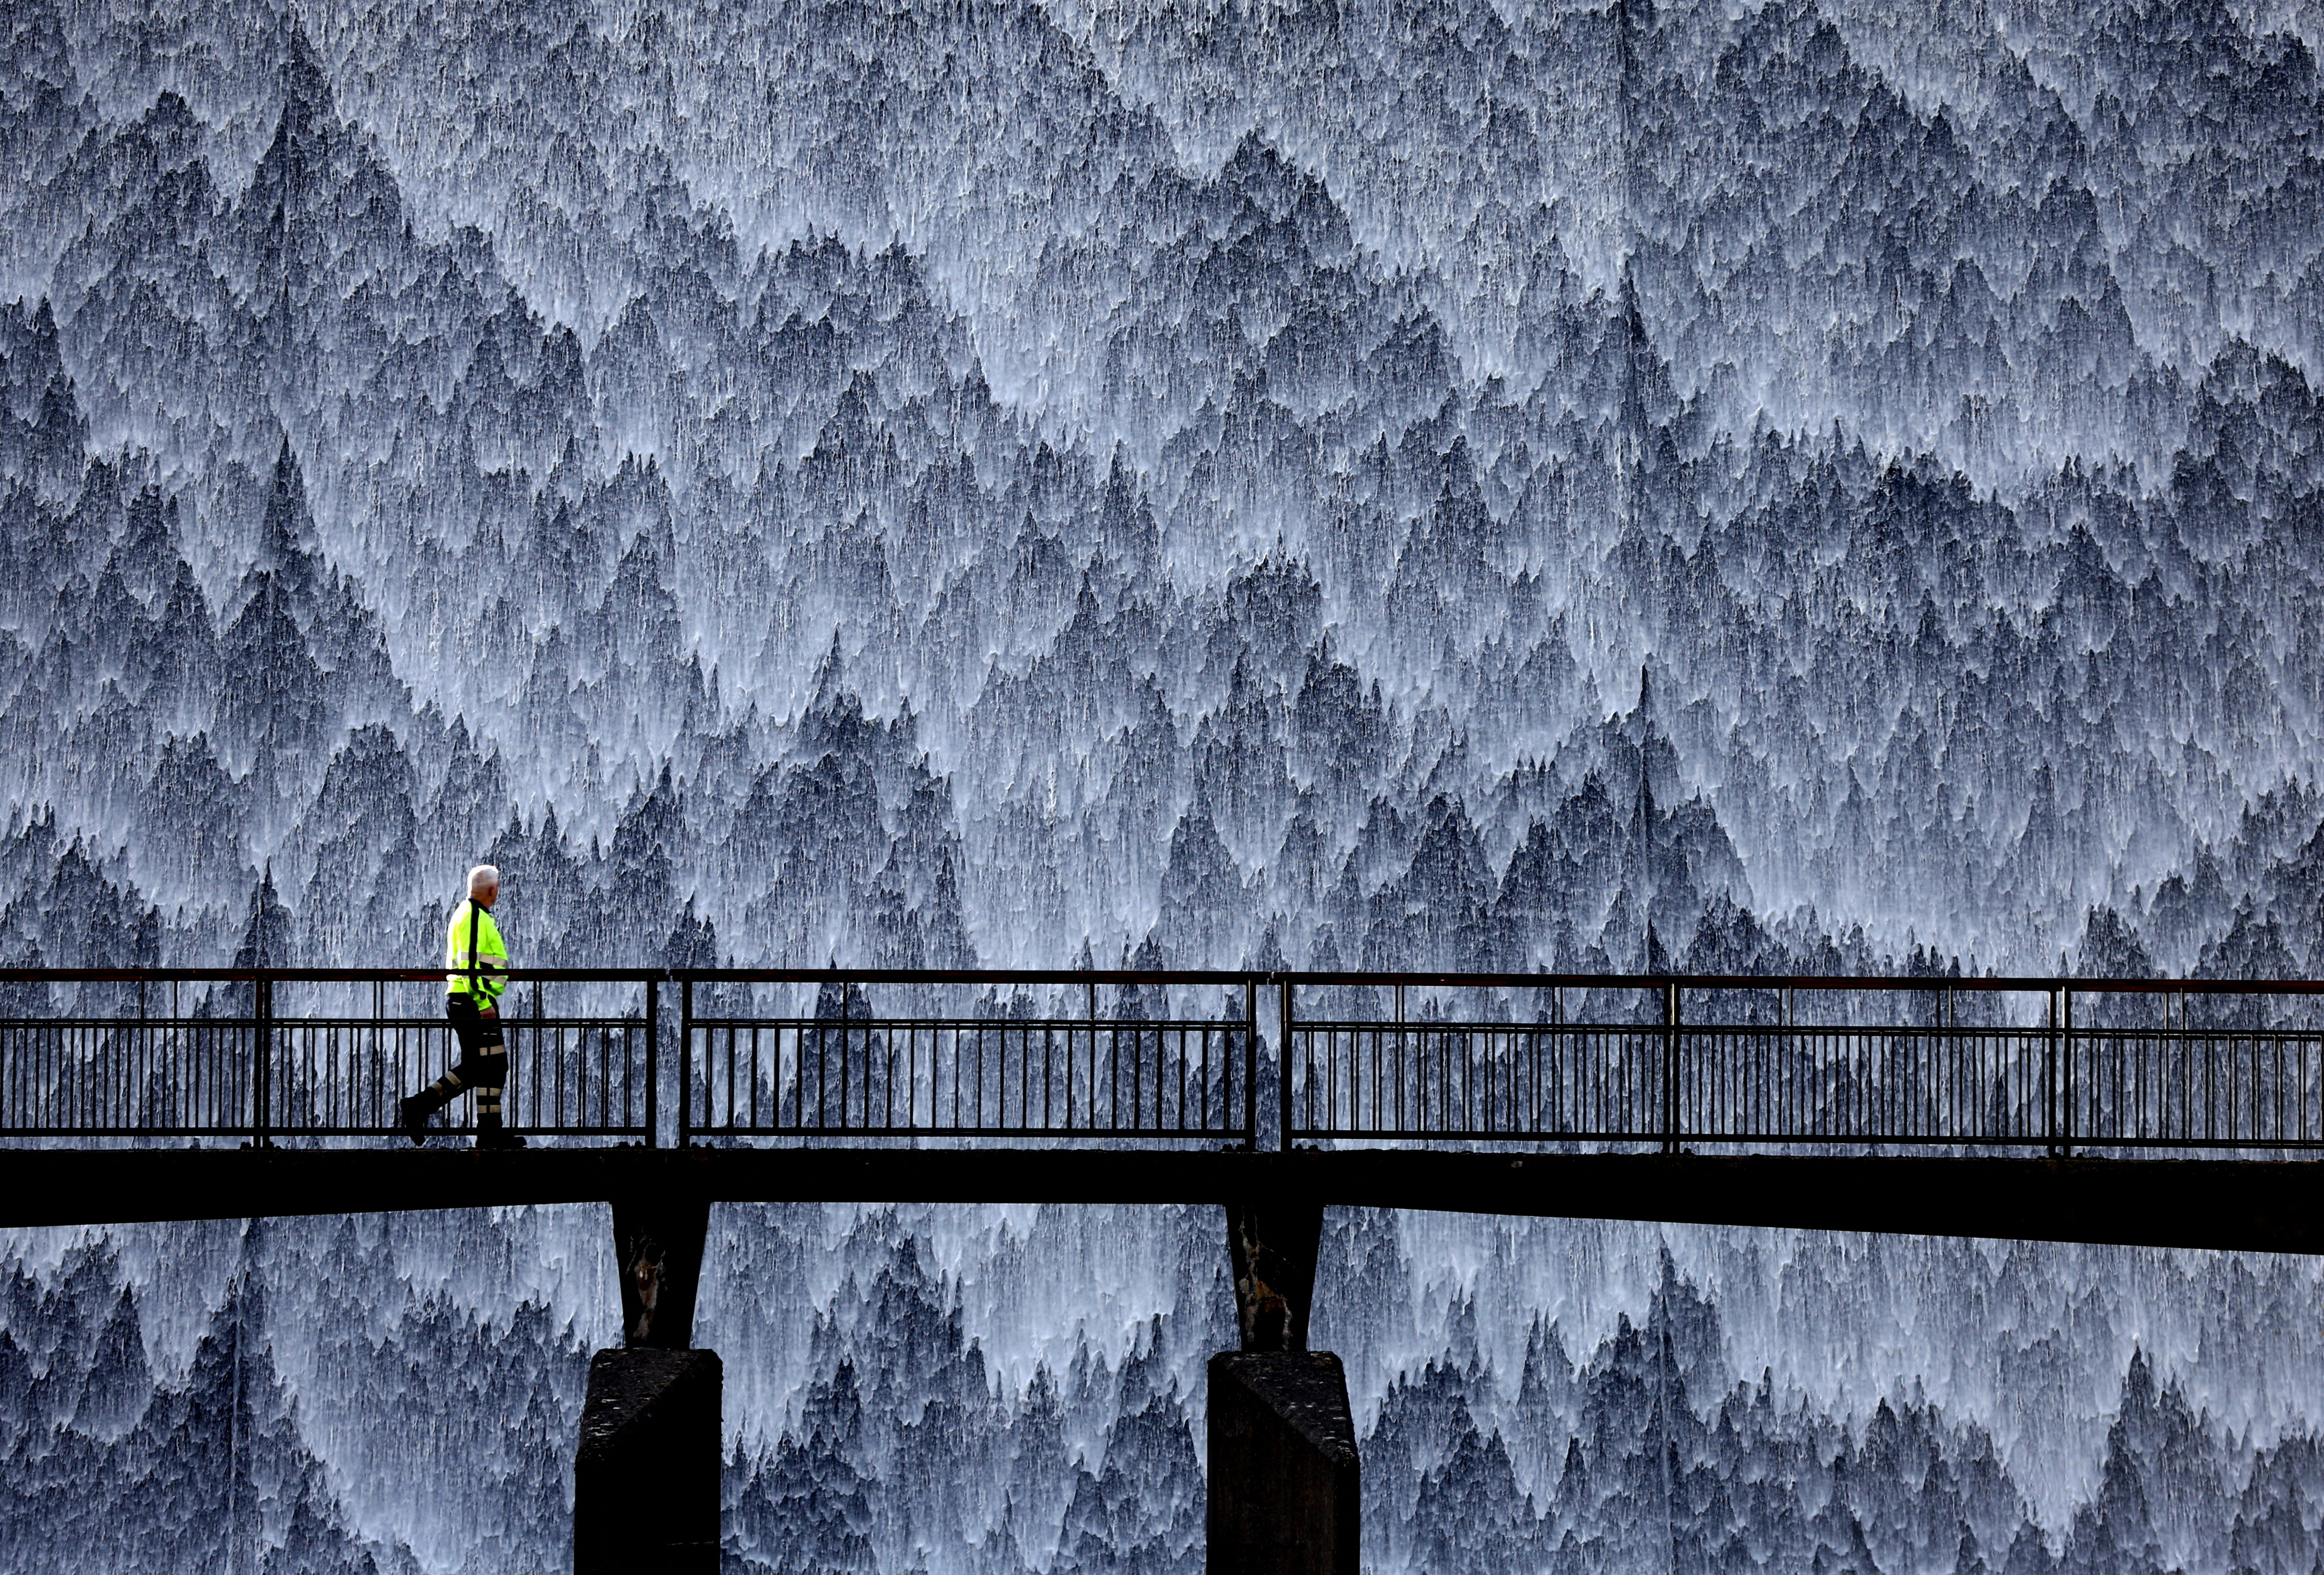 Ein Wartungsarbeiter überquert die Brücke am Wet Sleddale Reservoir in Penrith